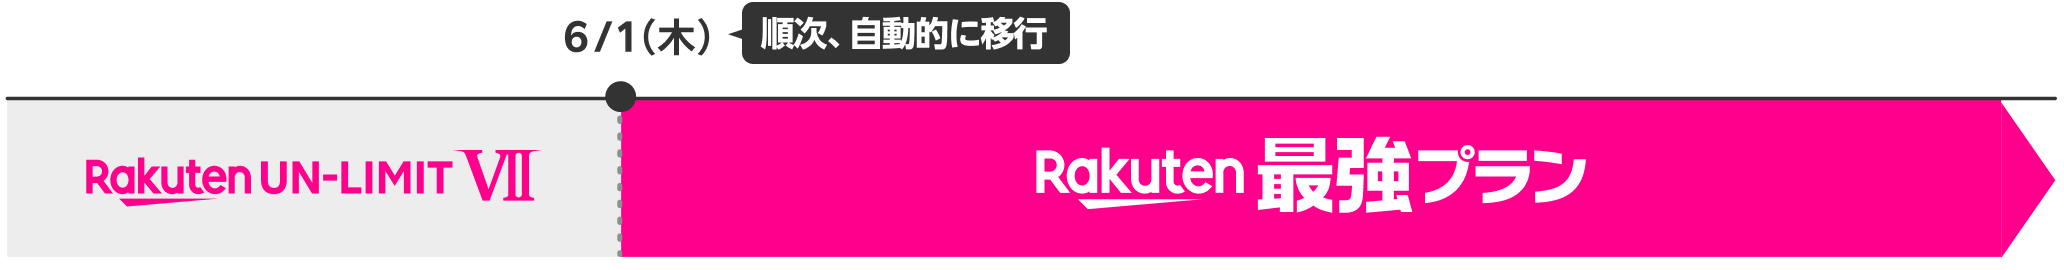 現在ご利用中のお客さまのプランは、6月1日（木）に自動的に「Rakuten最強プラン」へ移行します